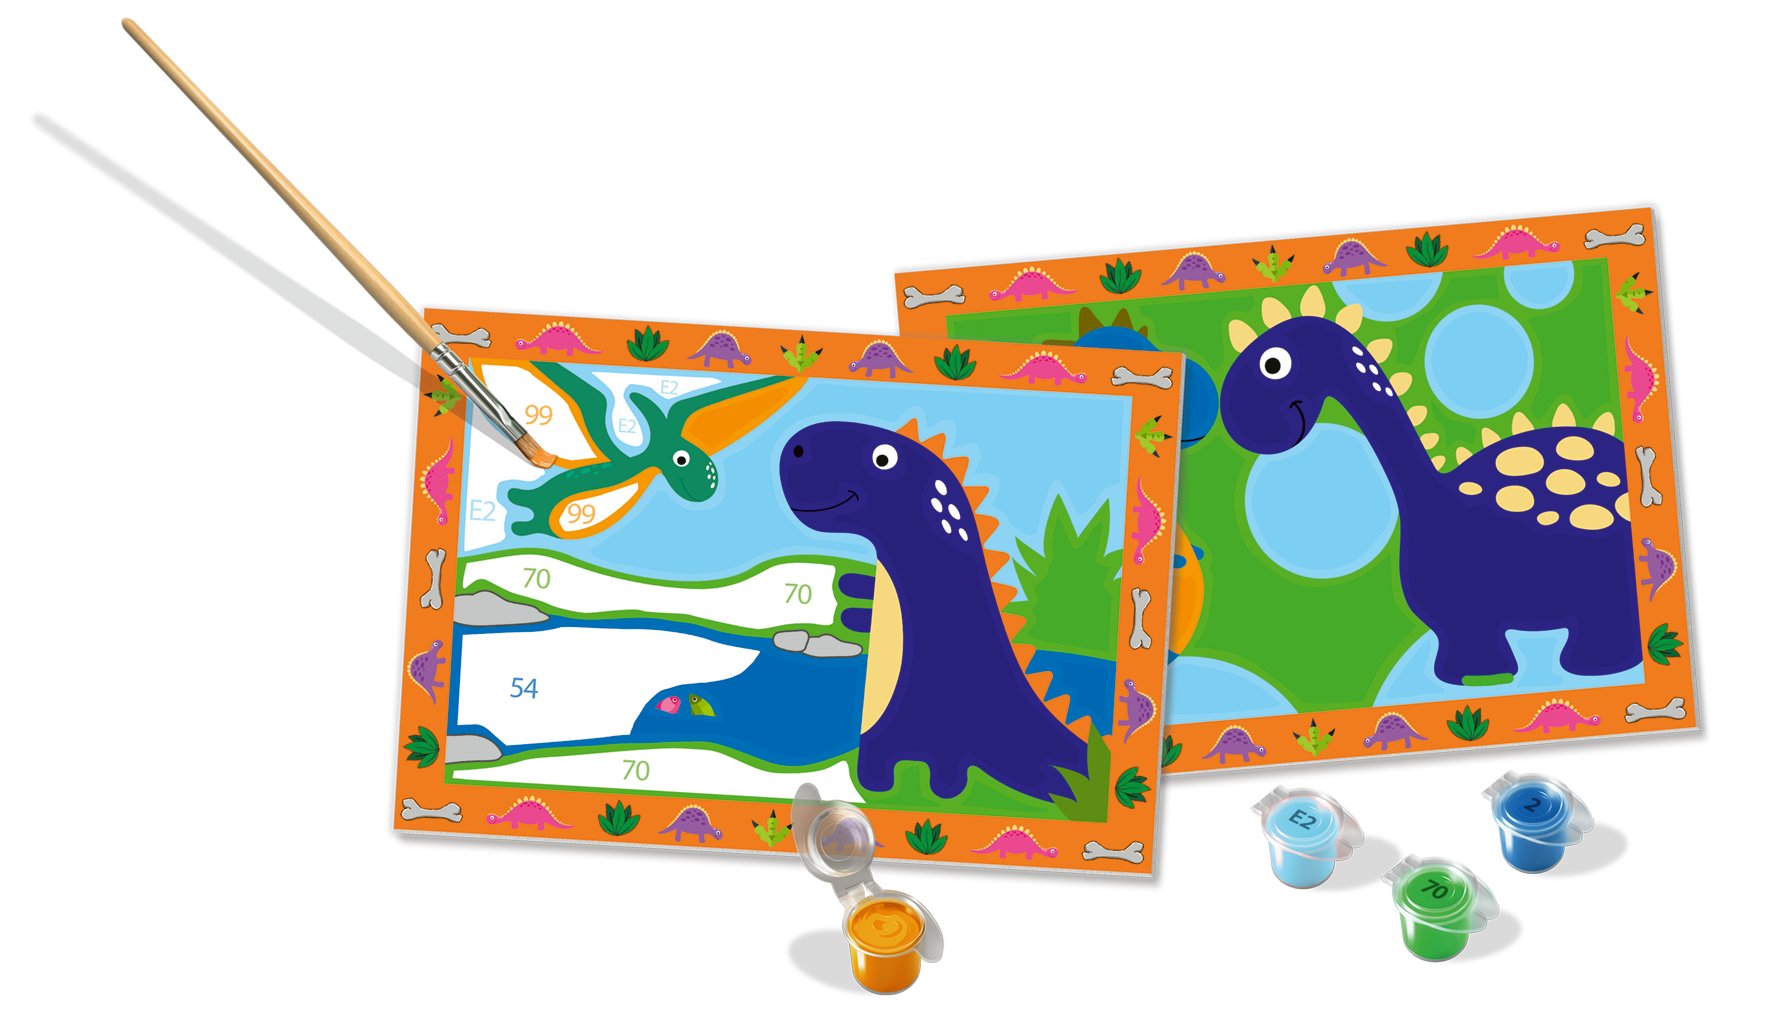 Ravensburer - creart serie junior, dinosauri, kit dipingere con i numeri, contiene 2 tavole prestampate, pennello, colori, gioco creativo per maschi e femmine dai 5+ anni di età - RAVENSBURGER